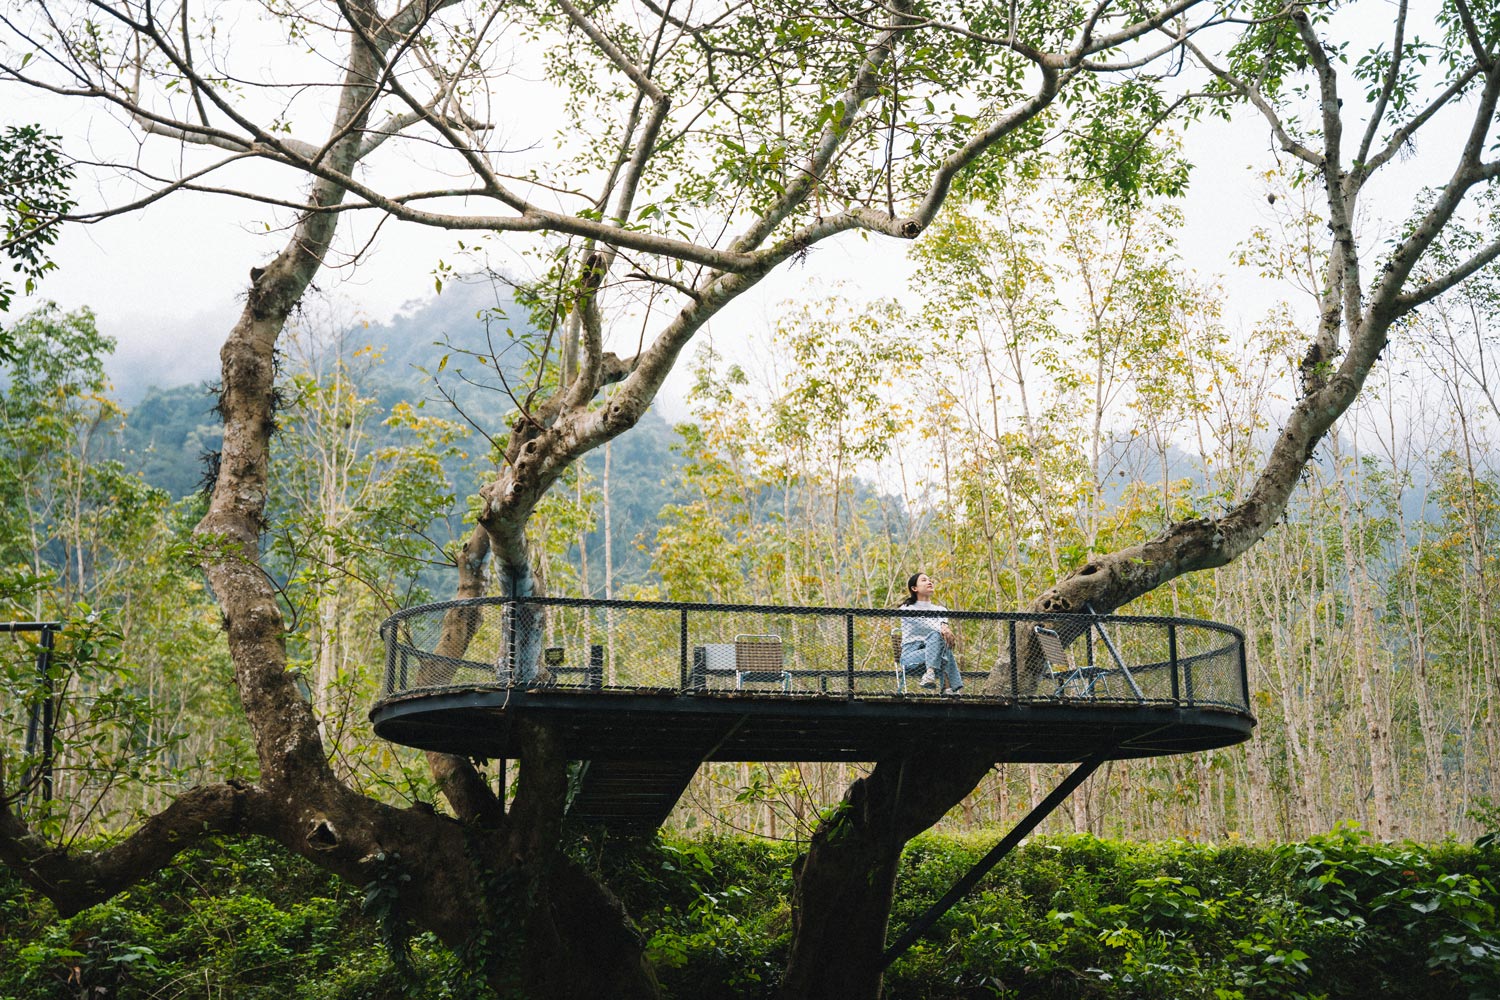 “Chill” giữa thiên nhiên tại nhà trên cây.